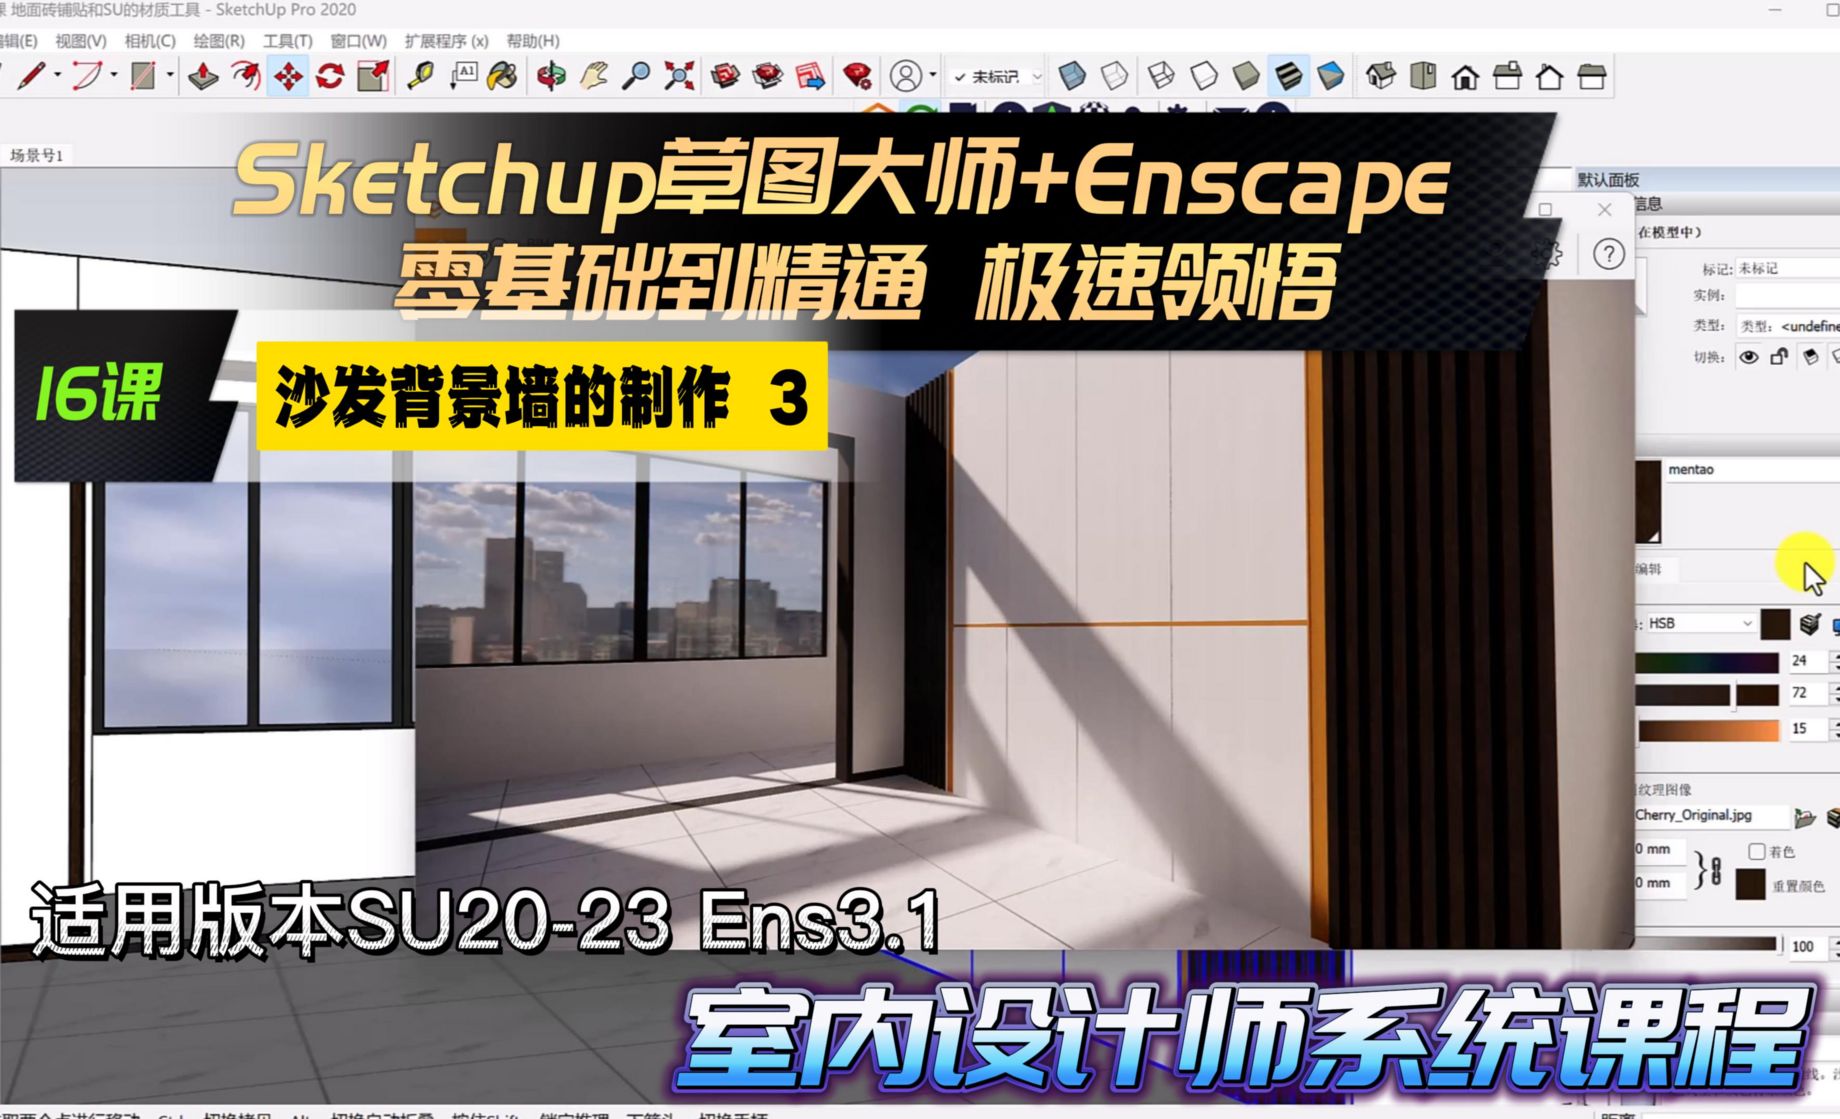 Sketchup+Enscape室内设计极速领悟-沙发背景墙制作3